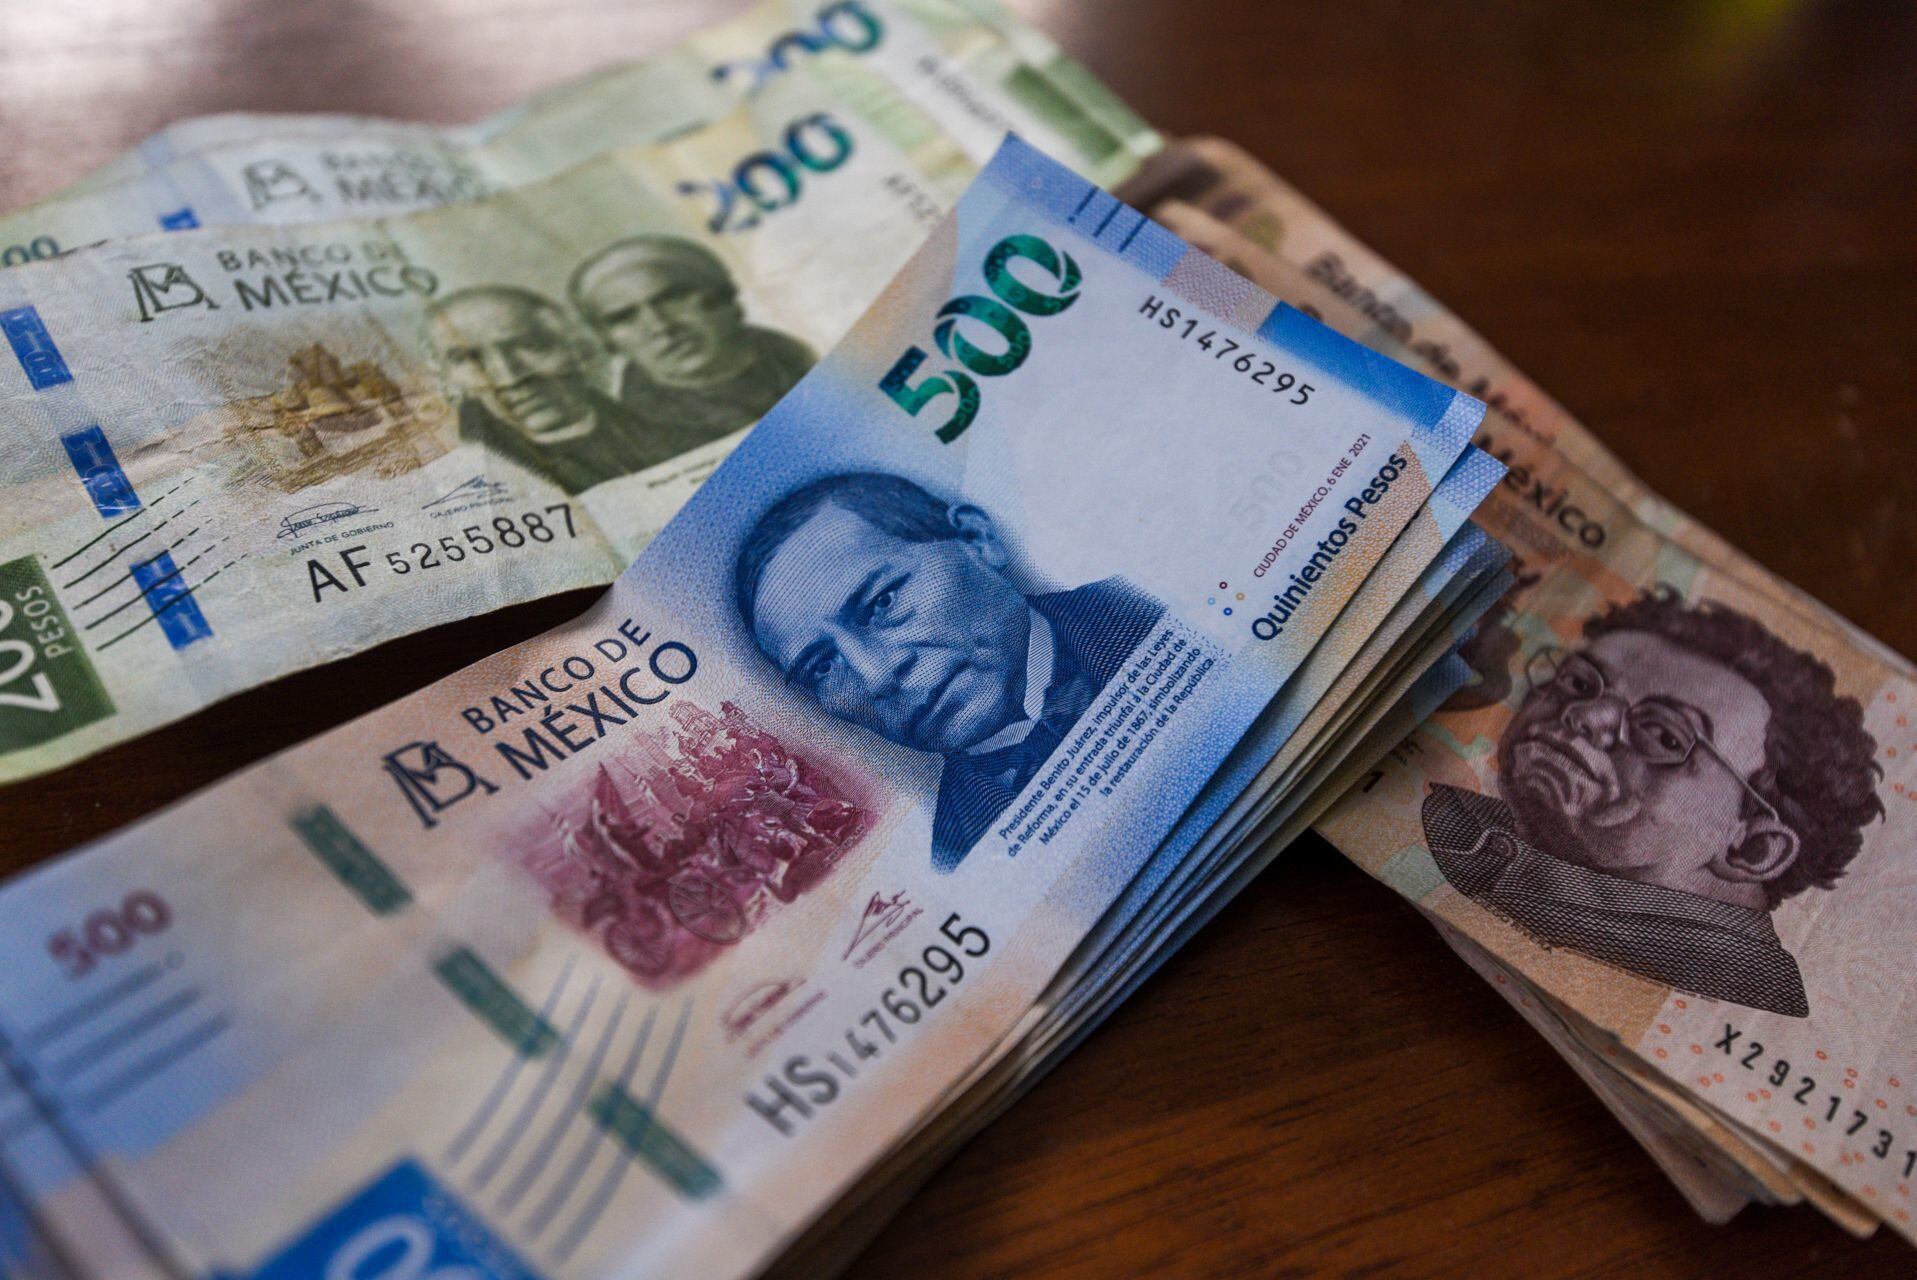 La Junta de Gobierno no descartó una posible depreciación del peso mexicano debido a la volatilidad de los mercados internacionales. FOTO: CRISANTA ESPINOSA AGUILAR /CUARTOSCURO.COM